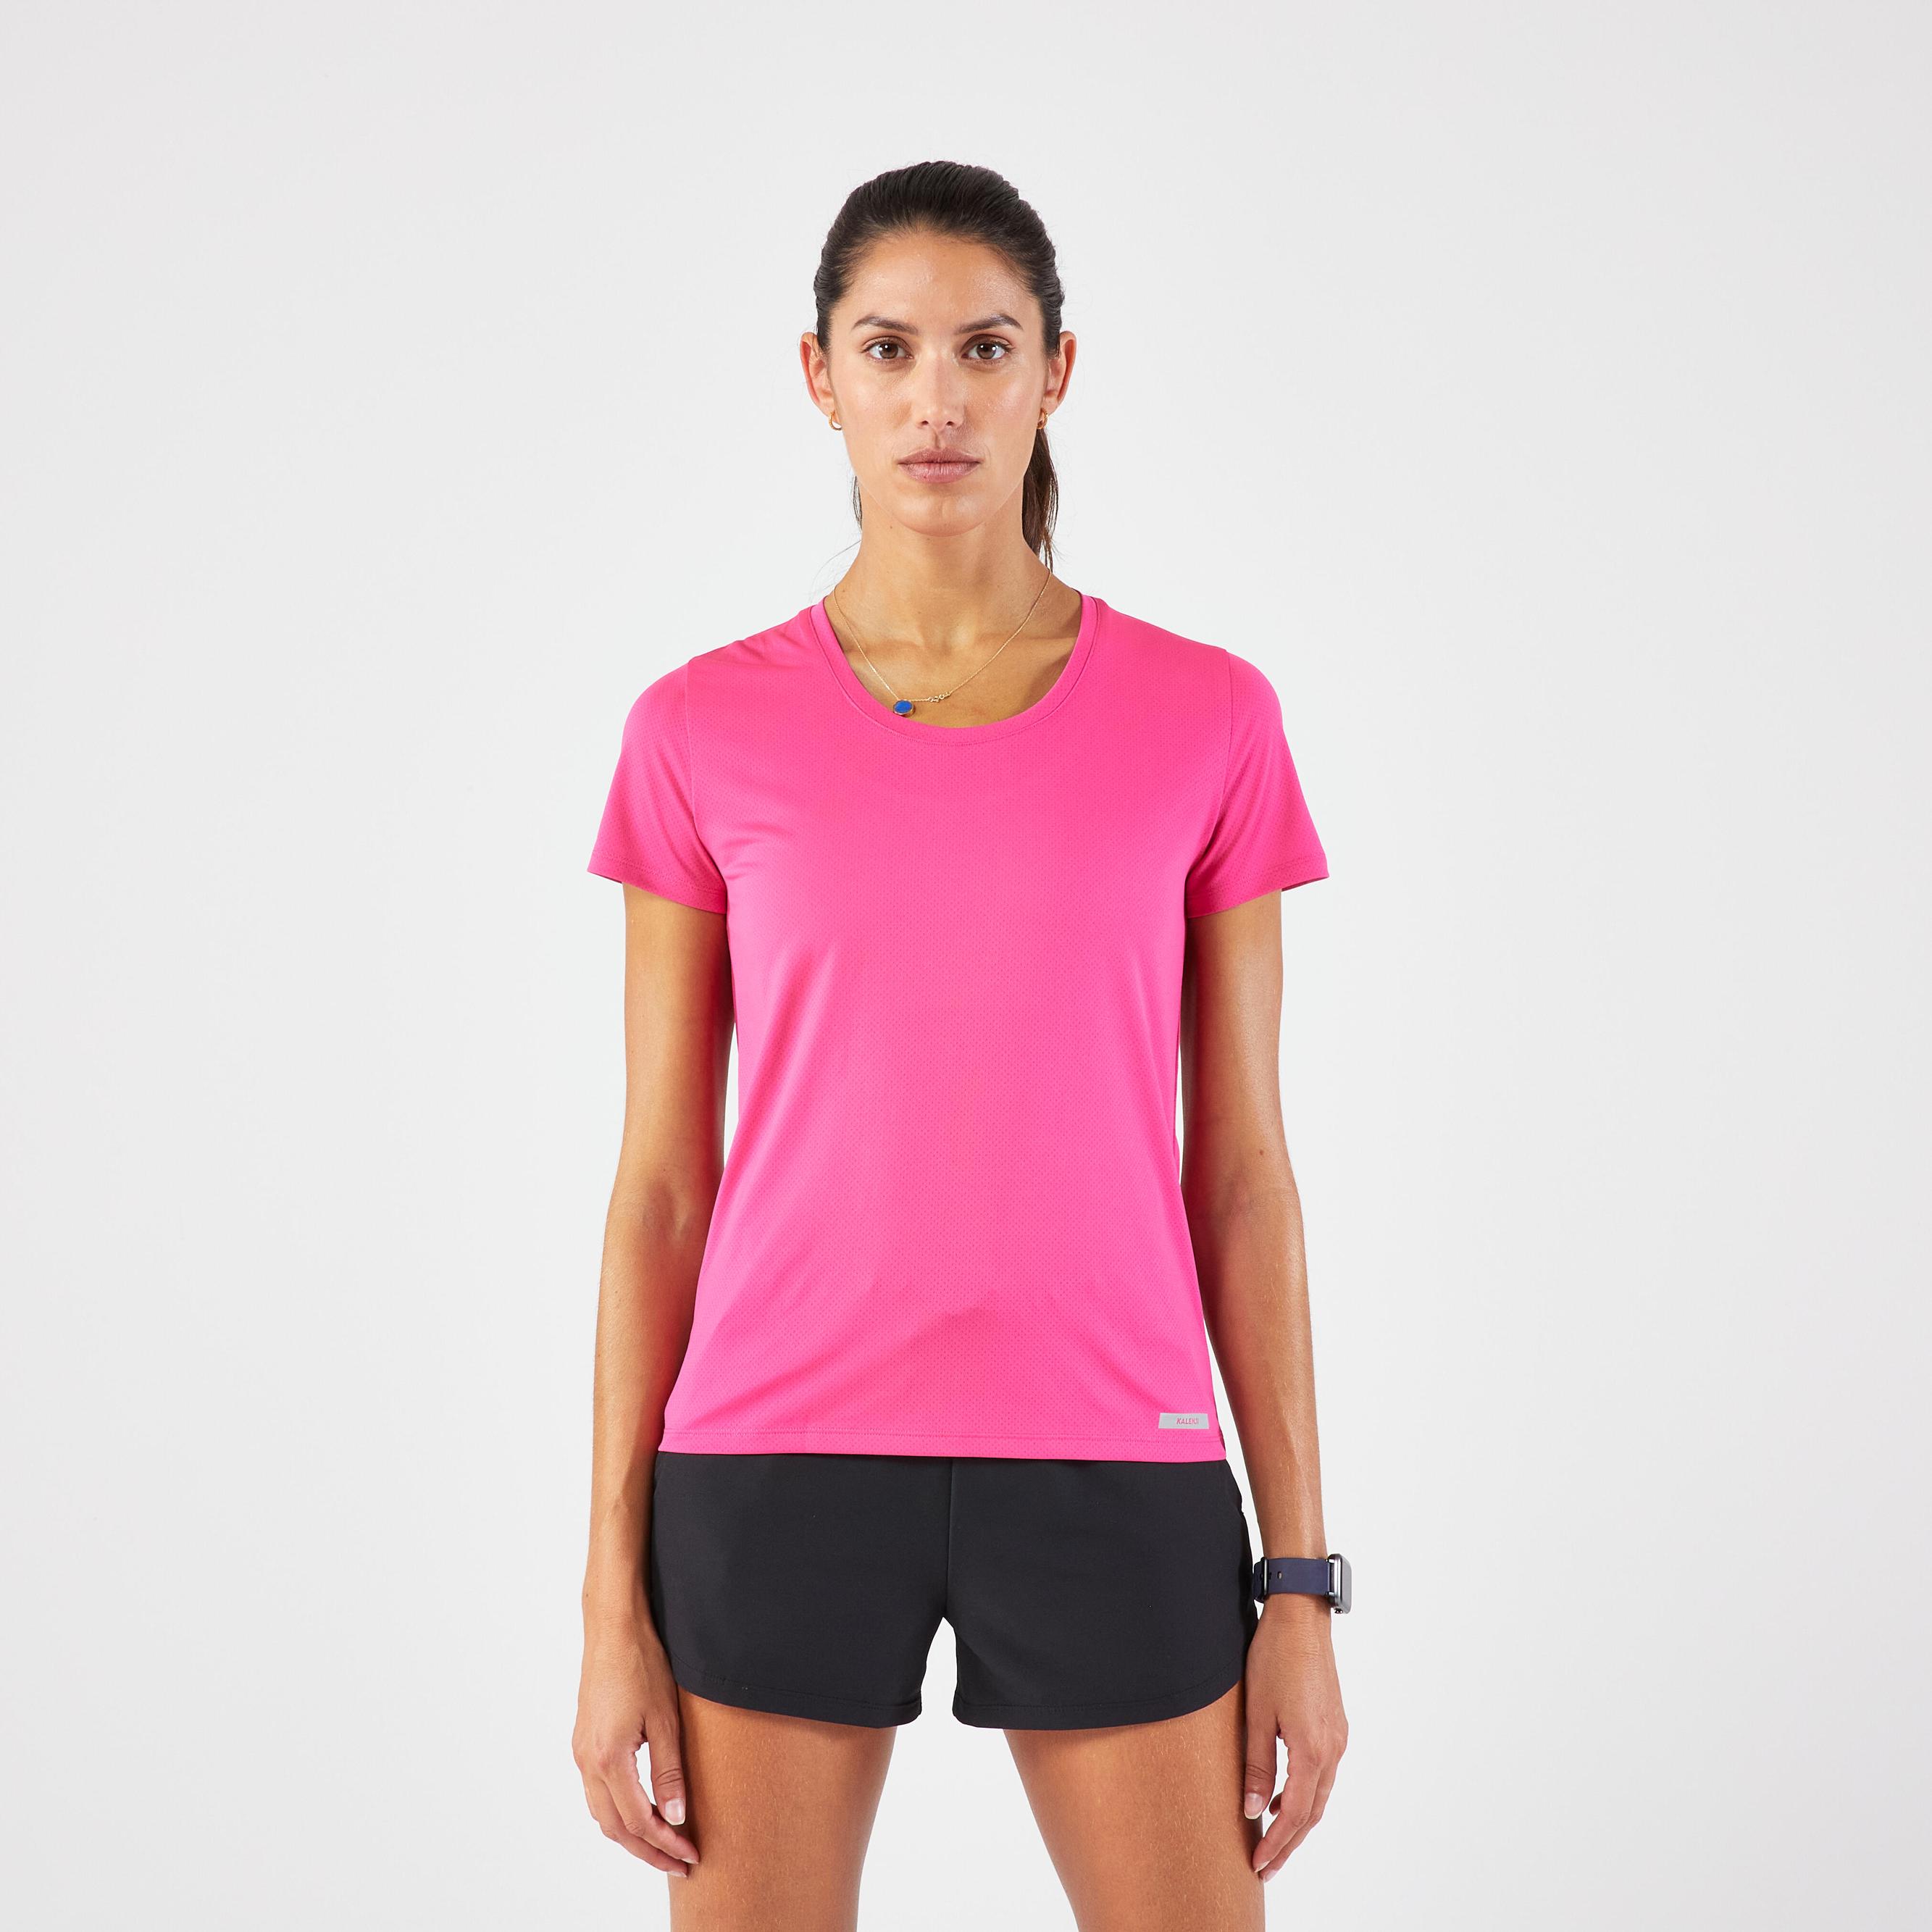 Laufshirt kurzarm Damen atmungsaktiv - Run 100 pink für 6,99€ in Decathlon